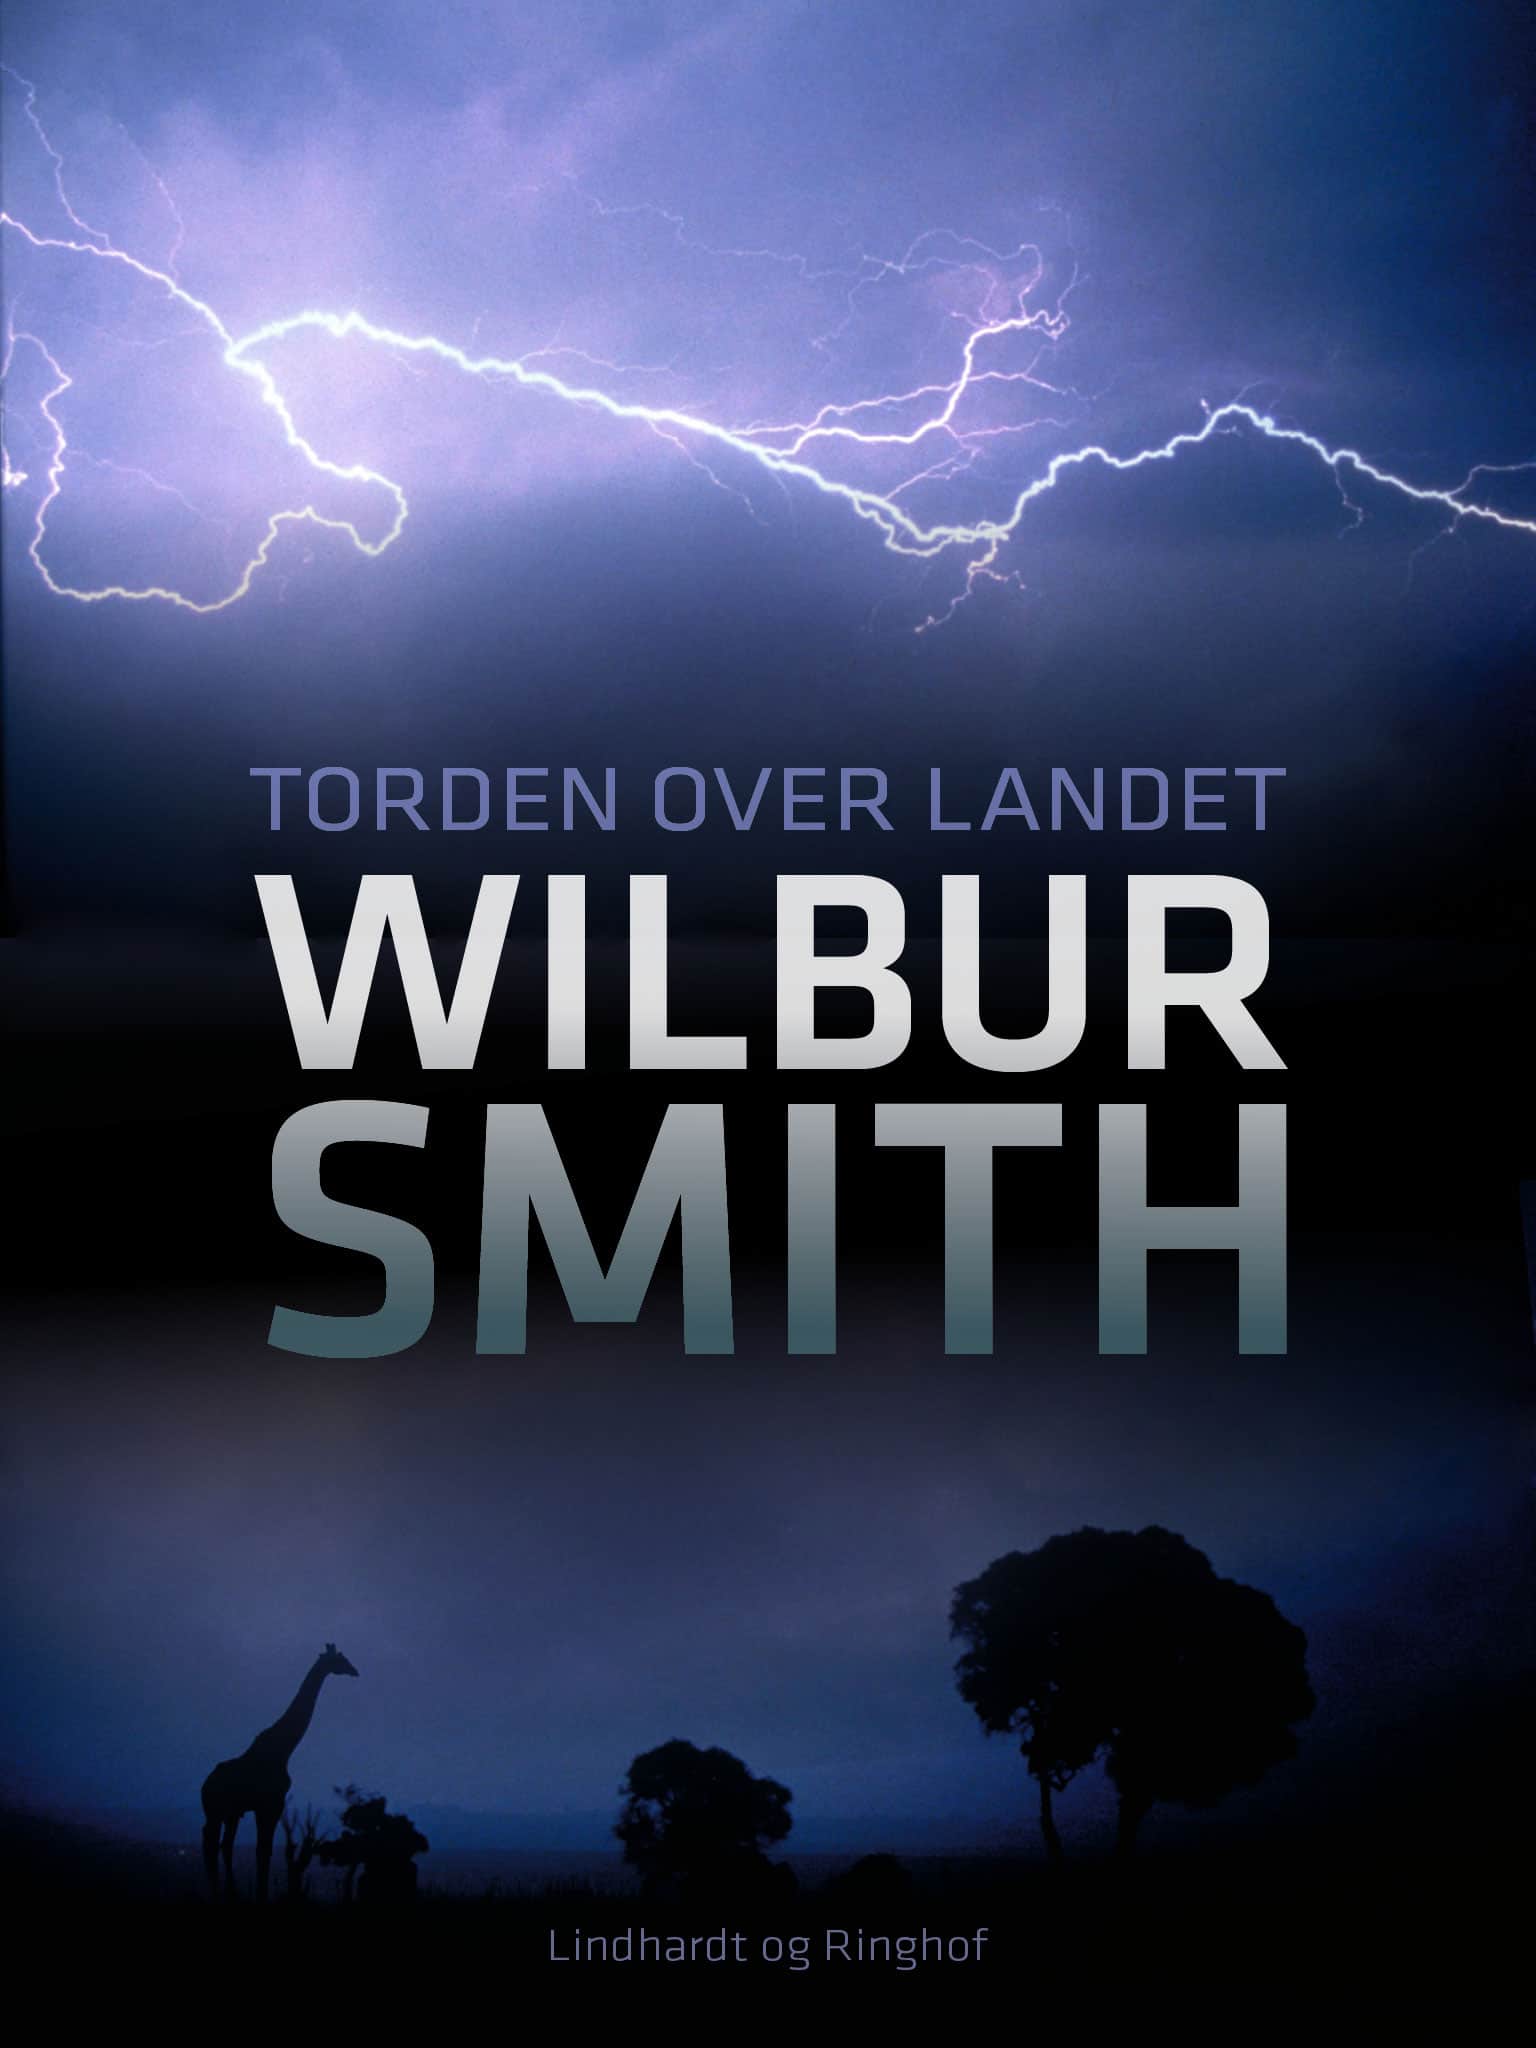 Torden over landet, Wilbur Smith, Courtney-serien